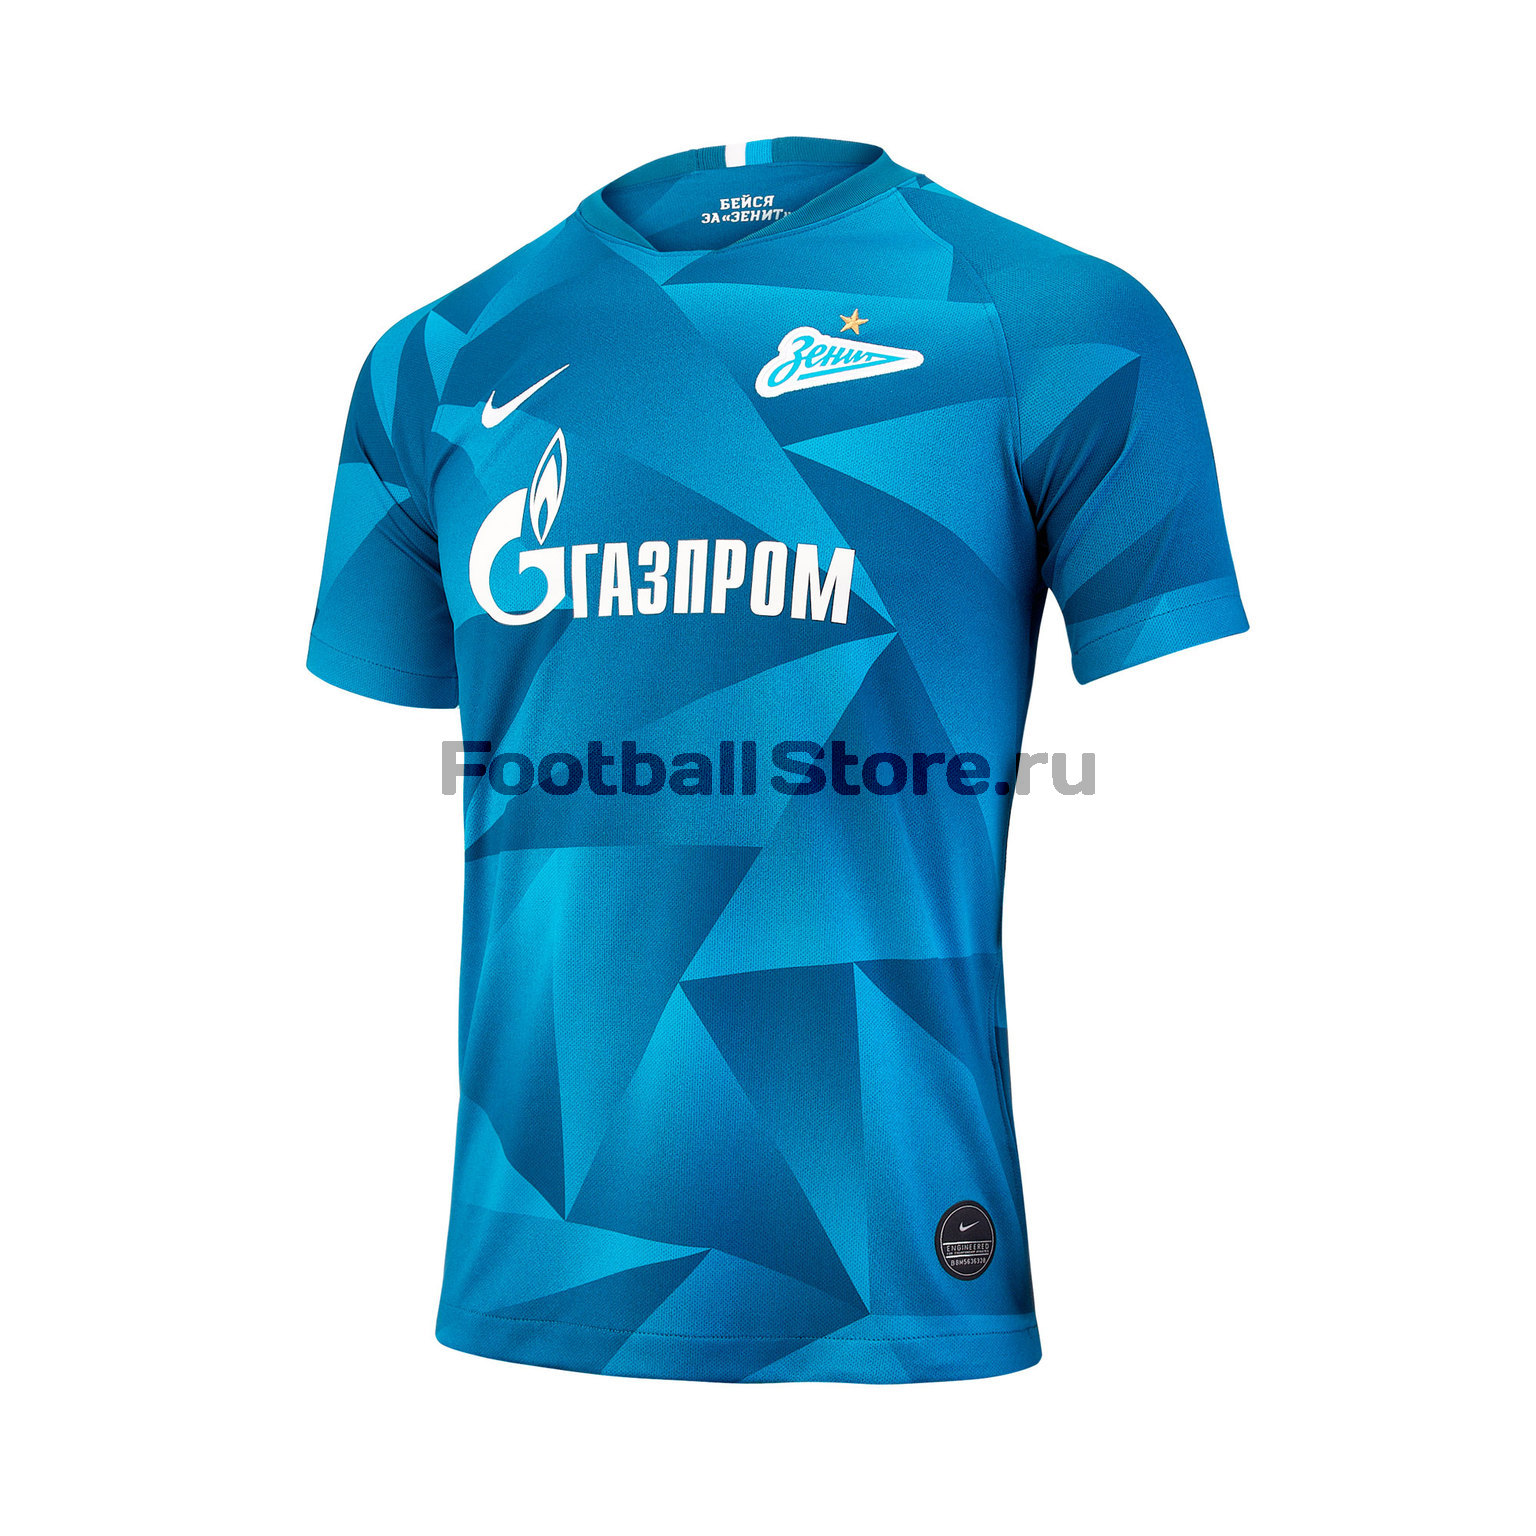 Футболка домашняя подростковая Nike Zenit сезон 2019/20